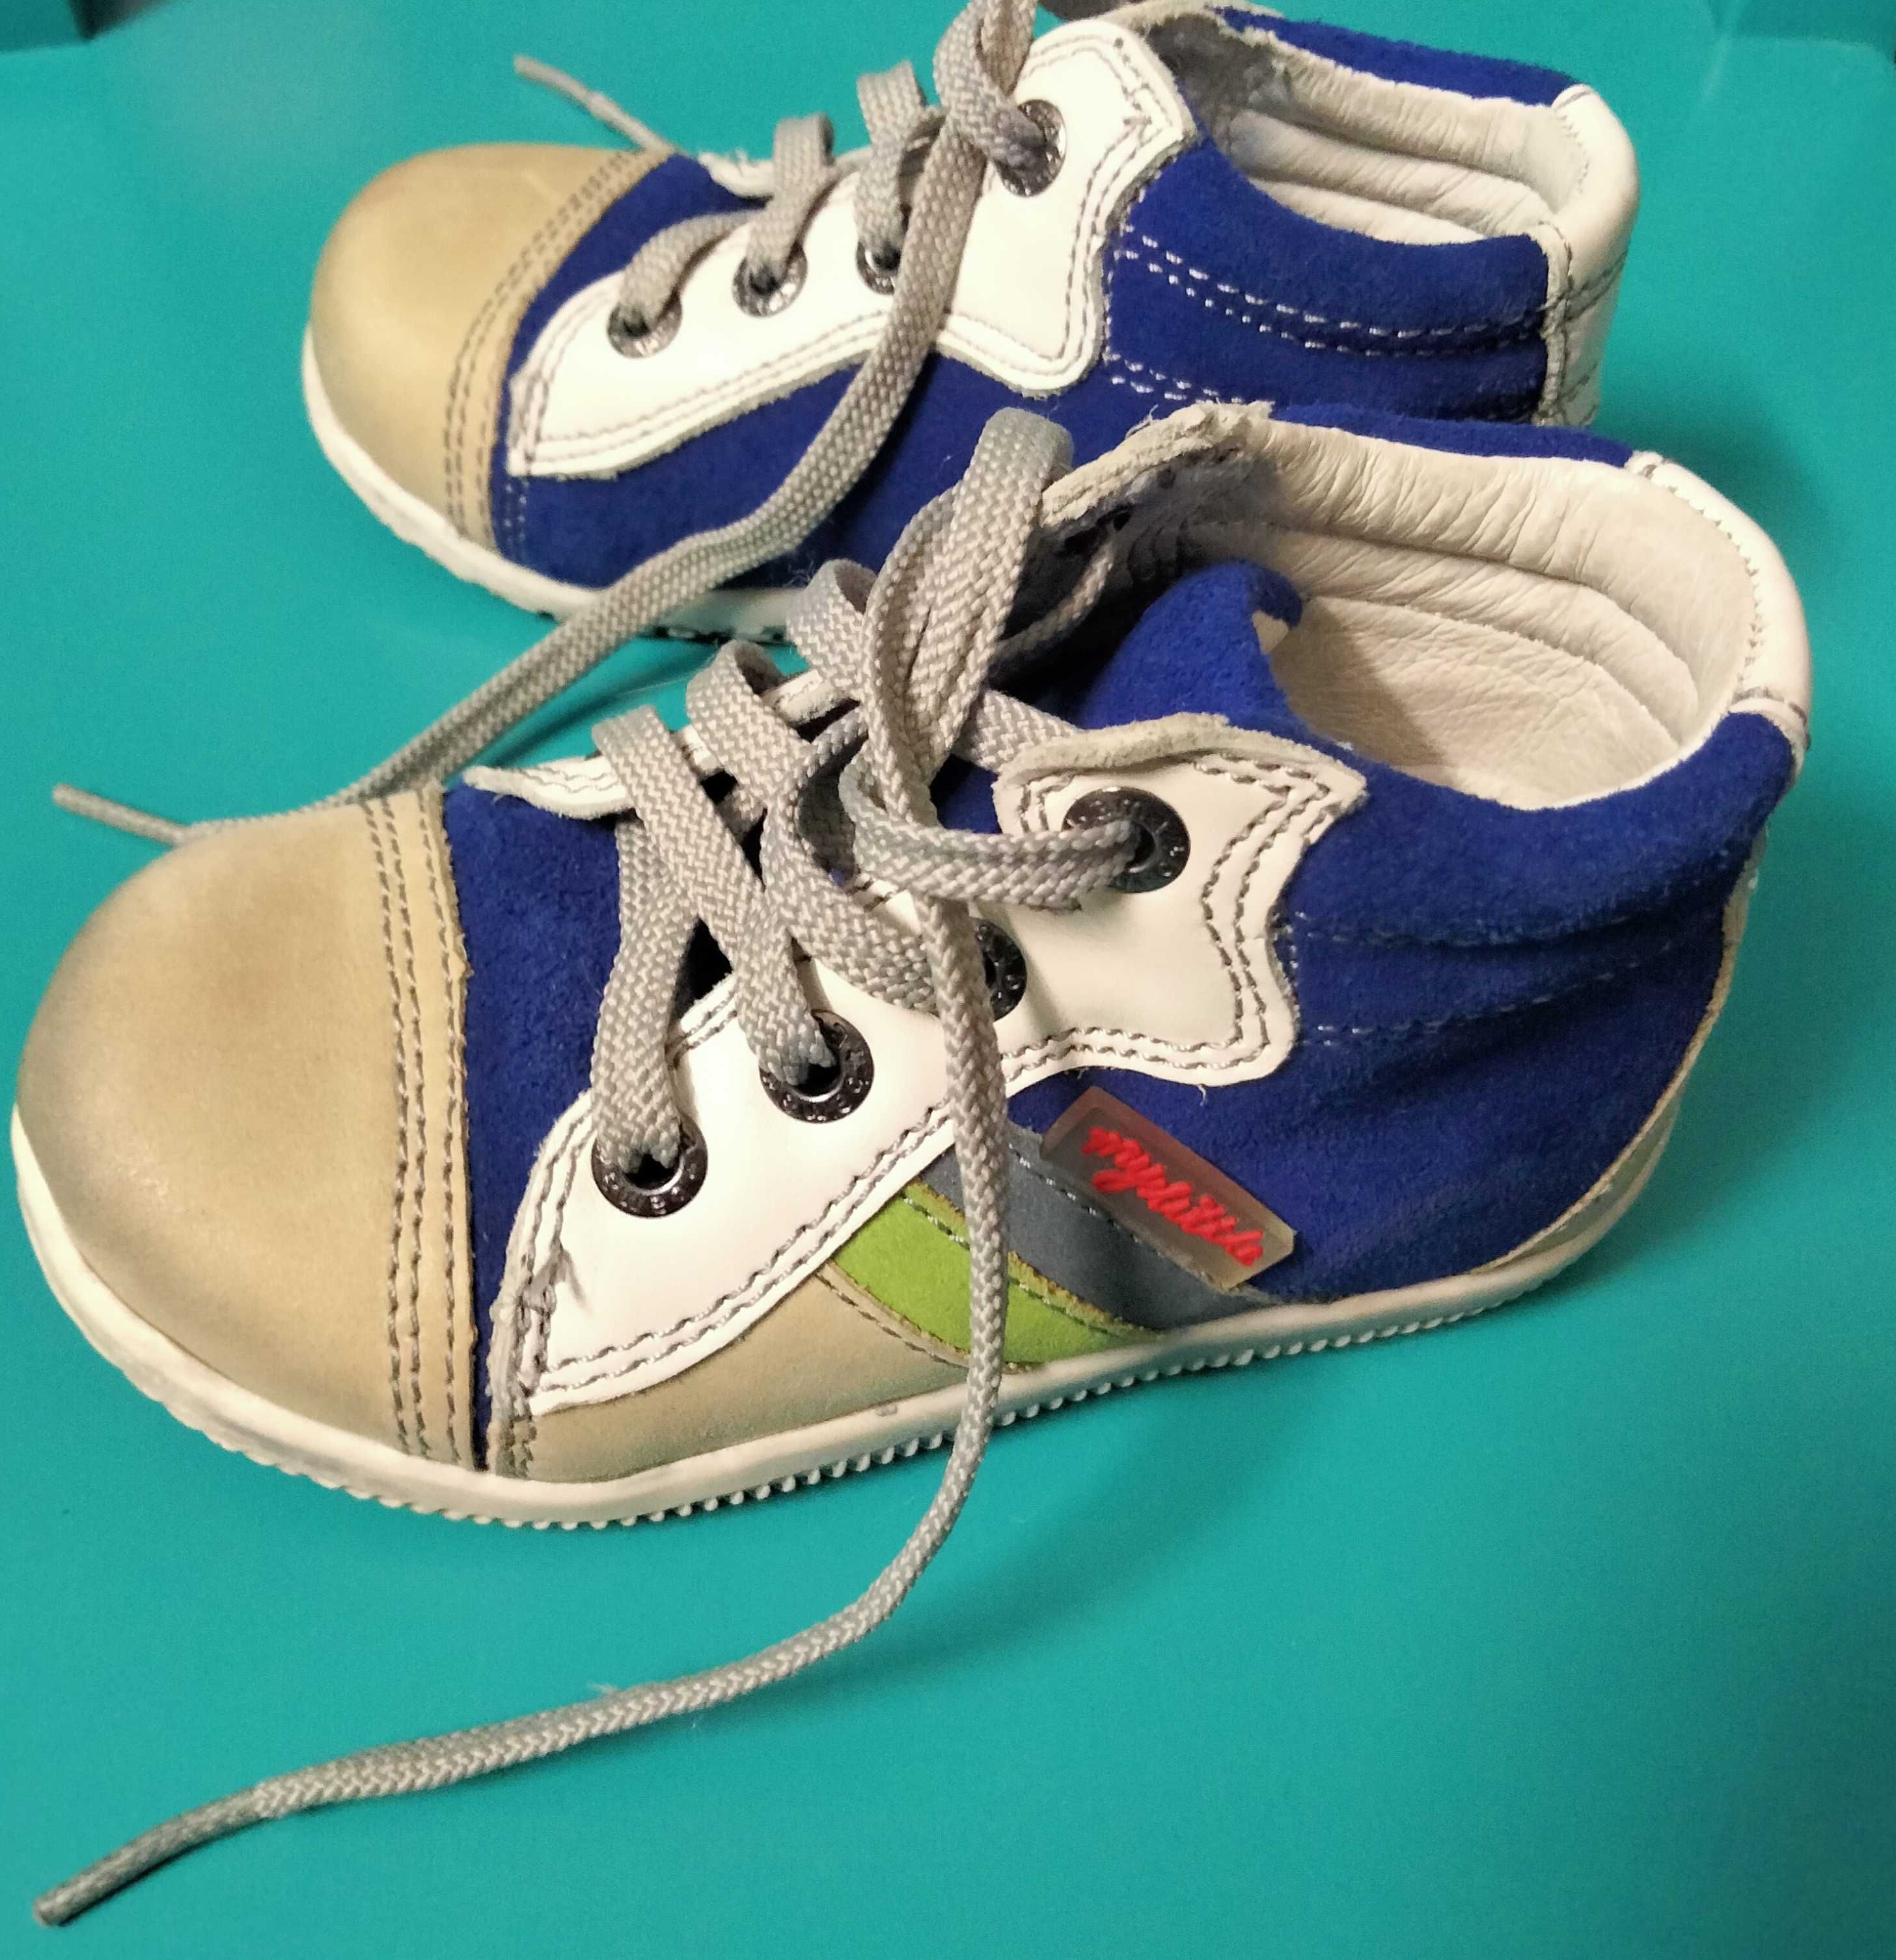 Модные ботинки (кроссовки, кеды) на малыша My little bama (21 размер)